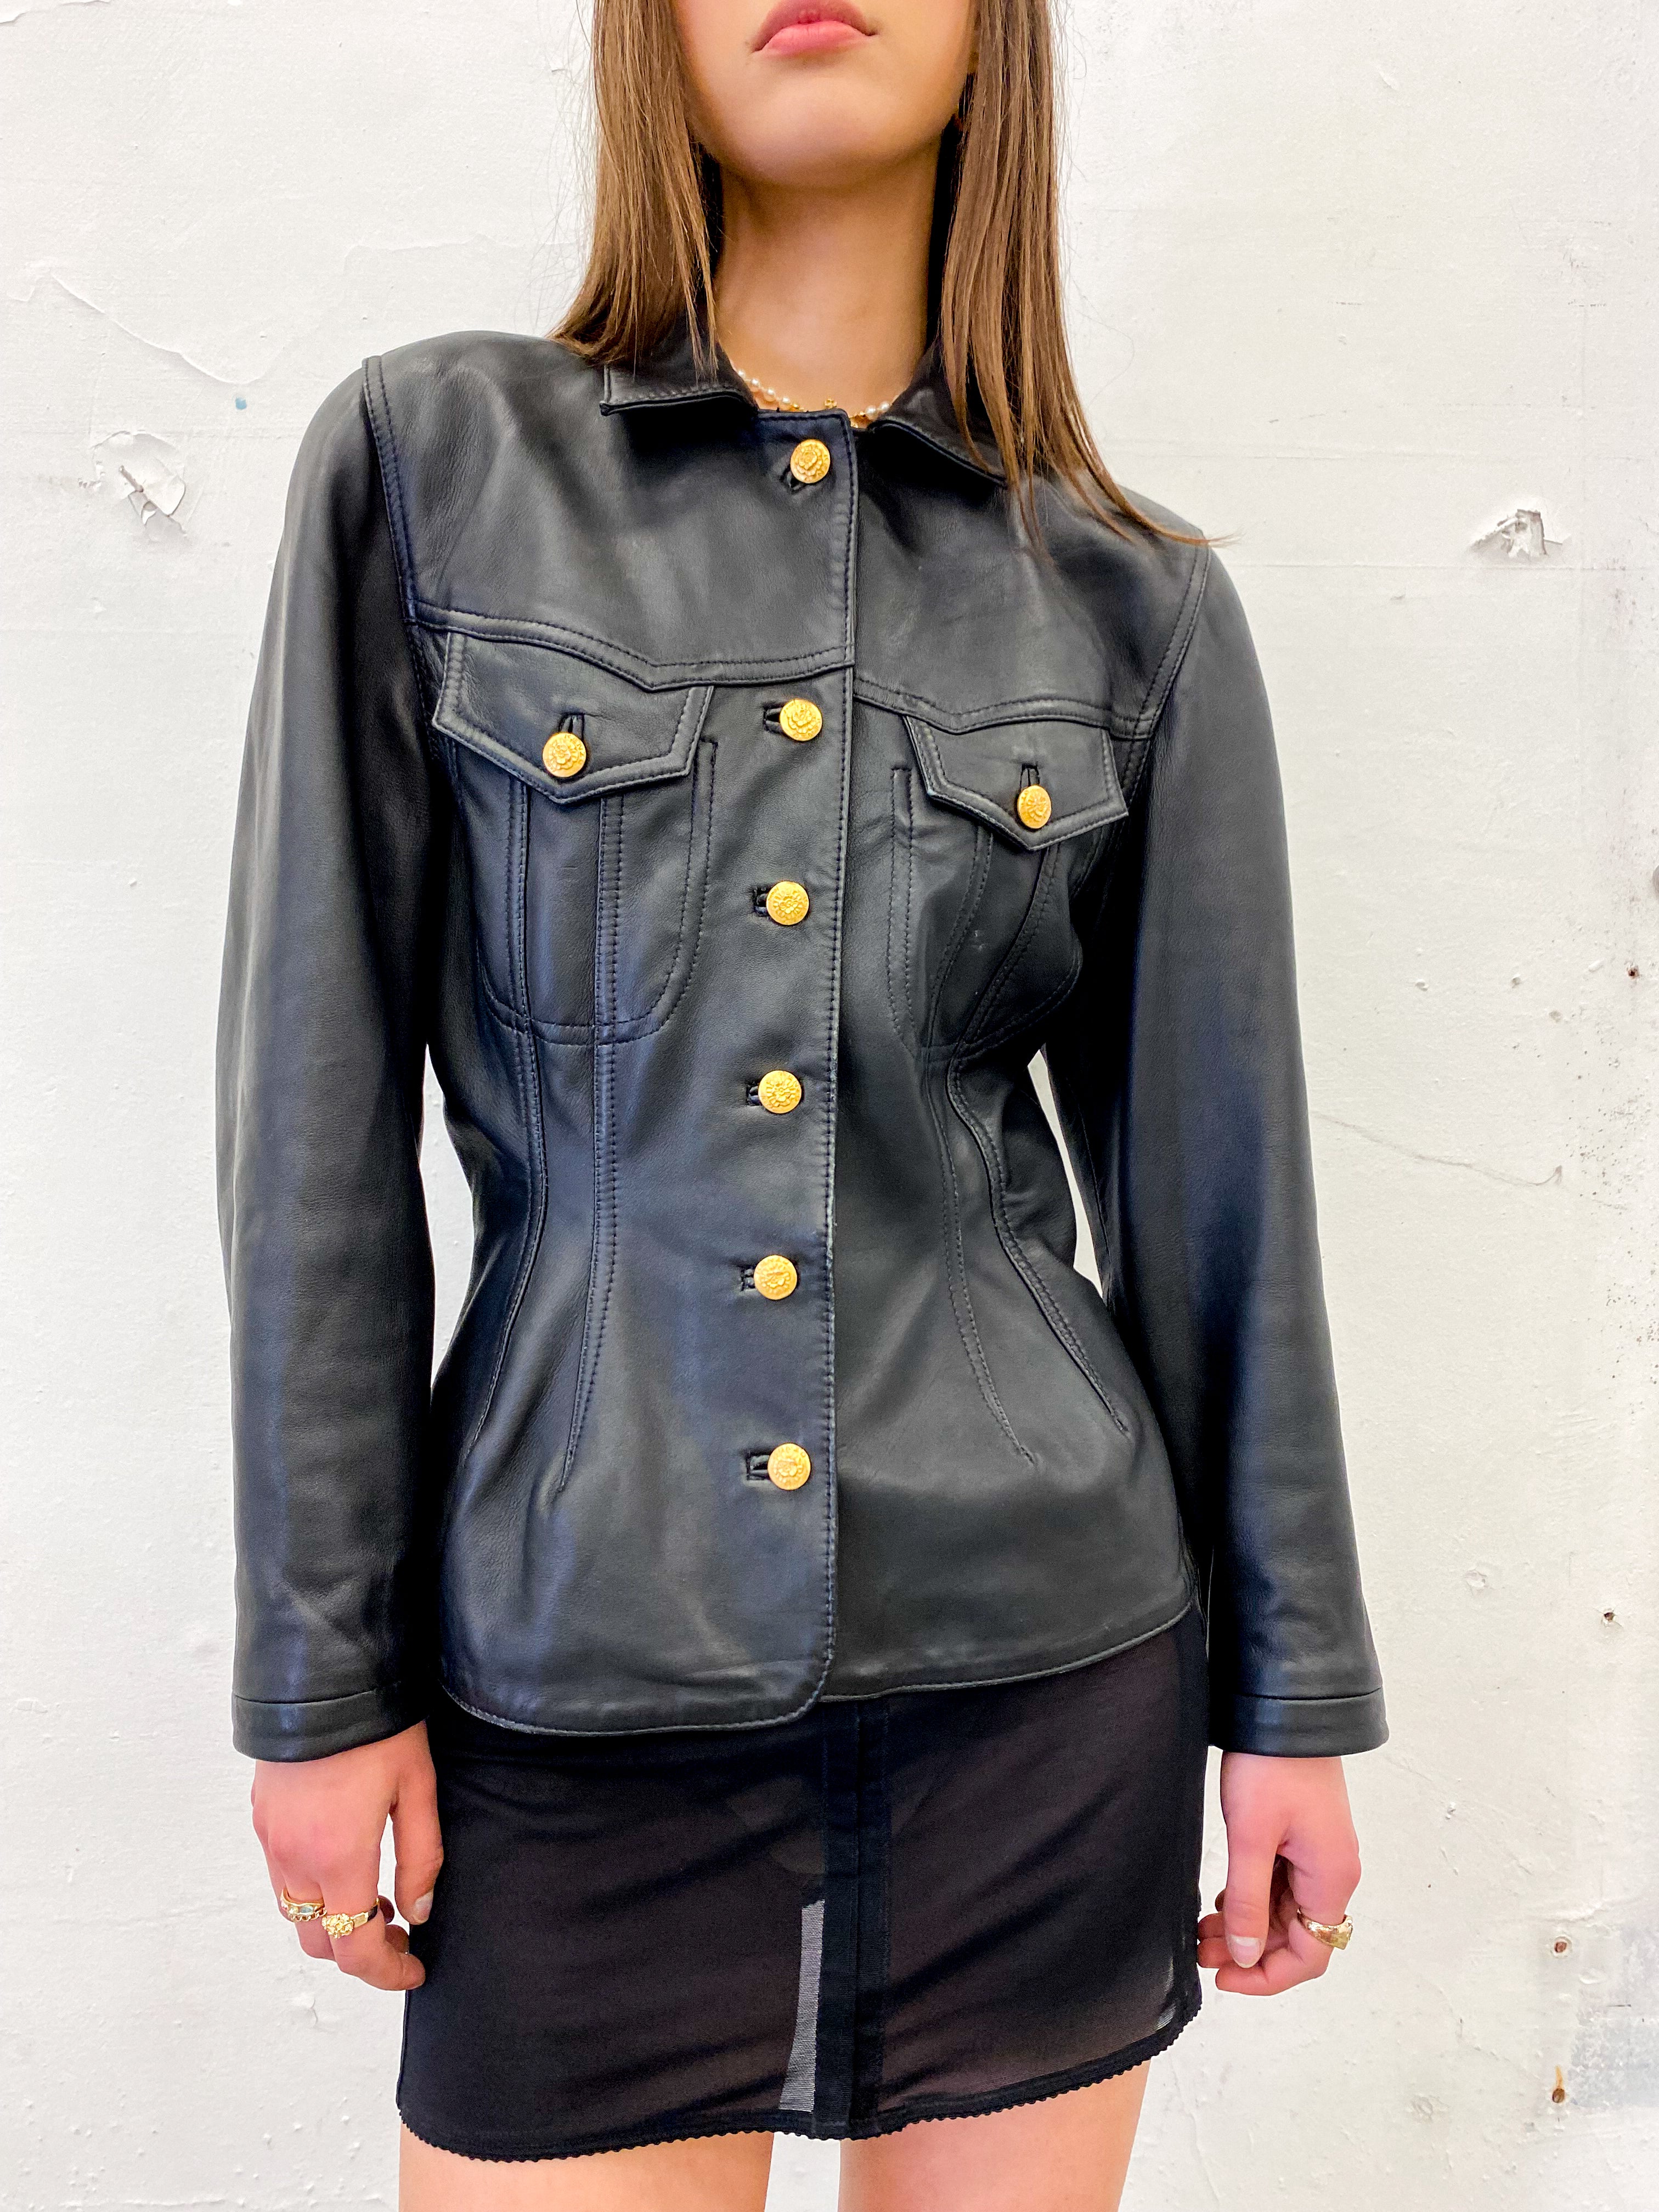 KENZO 1990s Leather Jacket Size M